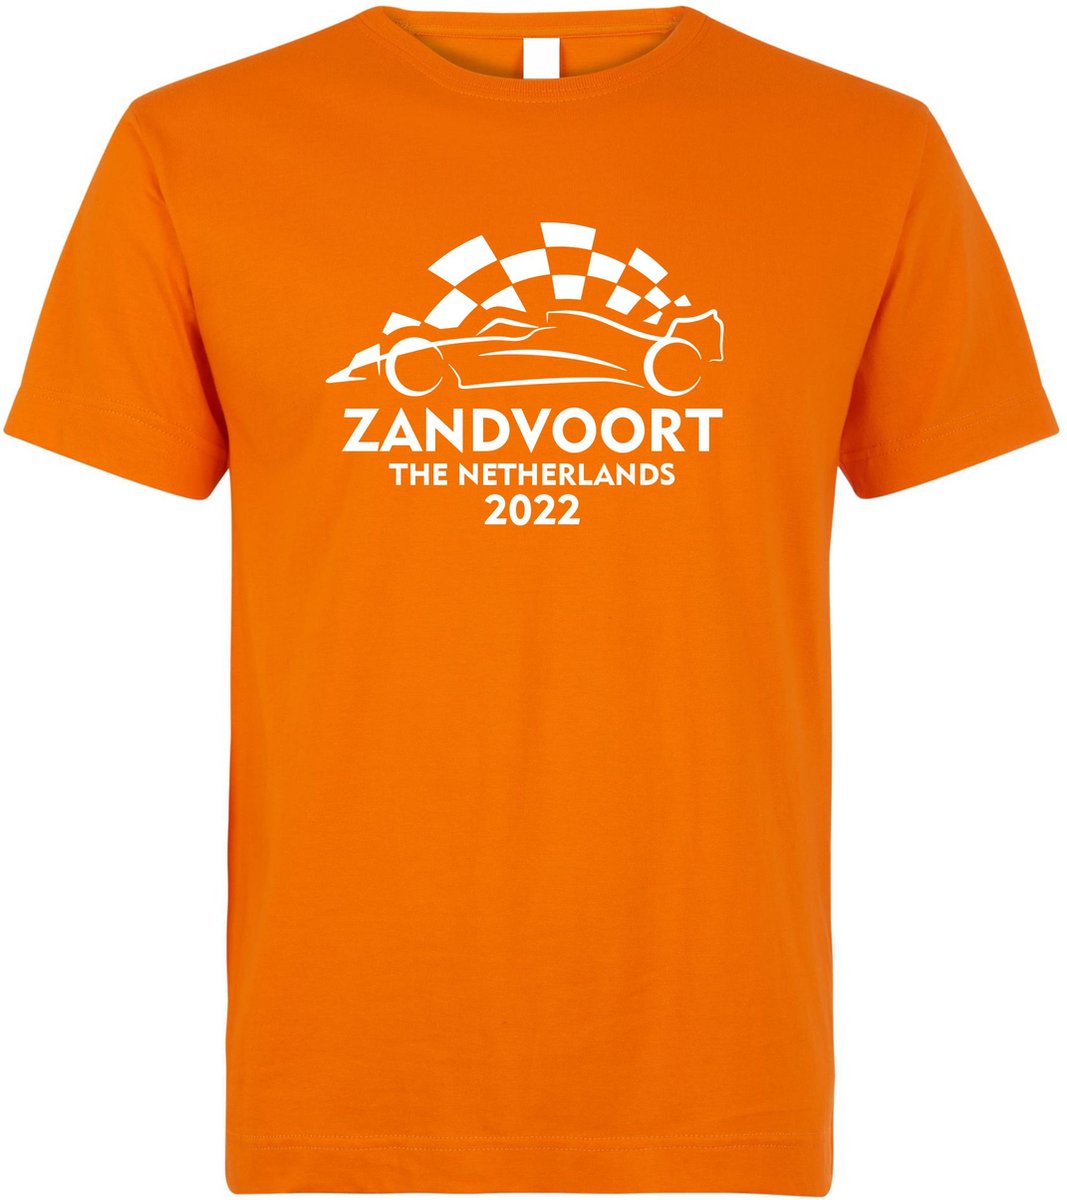 T-shirt Zandvoort The Netherlands 2022 met raceauto | Max Verstappen / Red Bull Racing / Formule 1 fan | Grand Prix Circuit Zandvoort | kleding shirt | Oranje | maat XXL